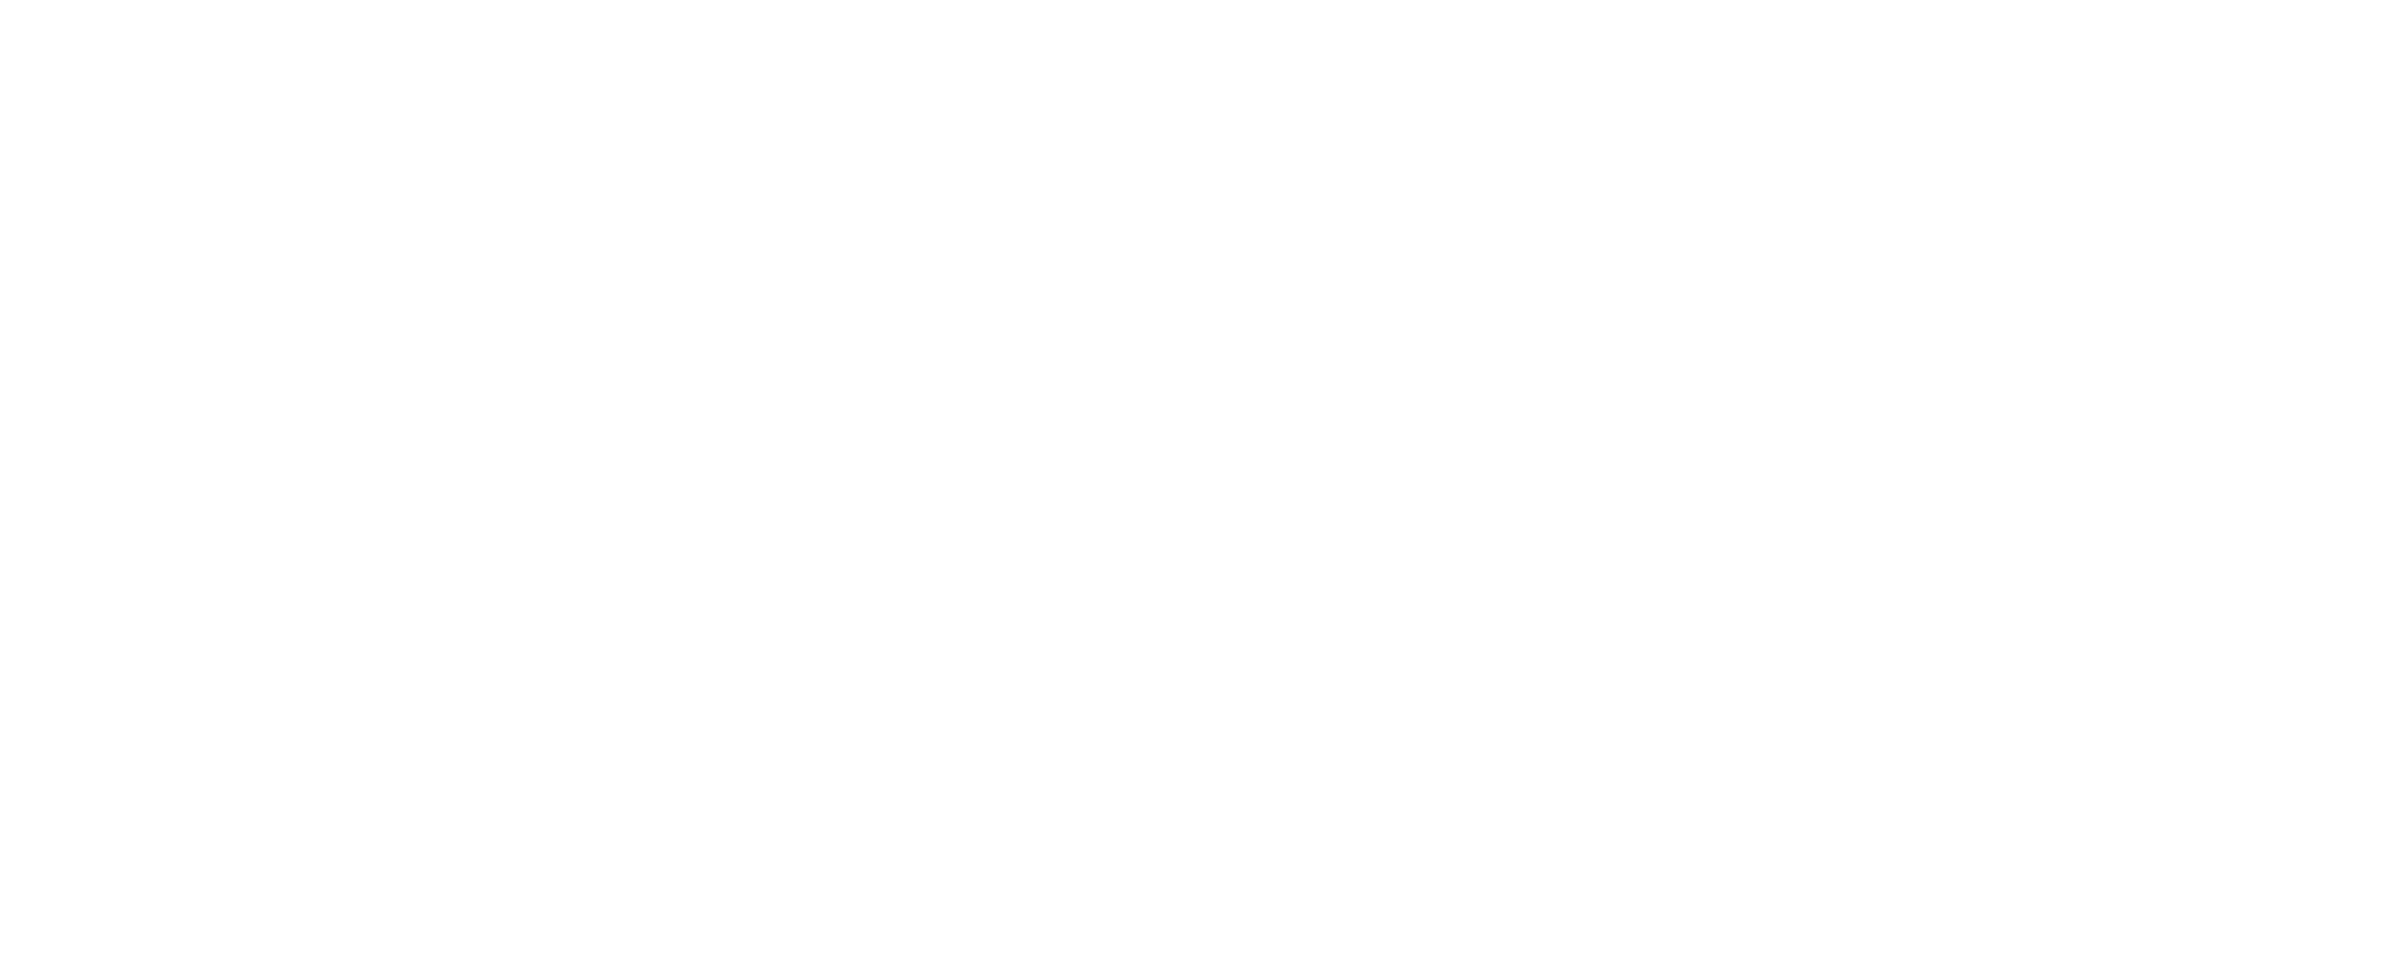 IBM PNG Clip Art HD Quality